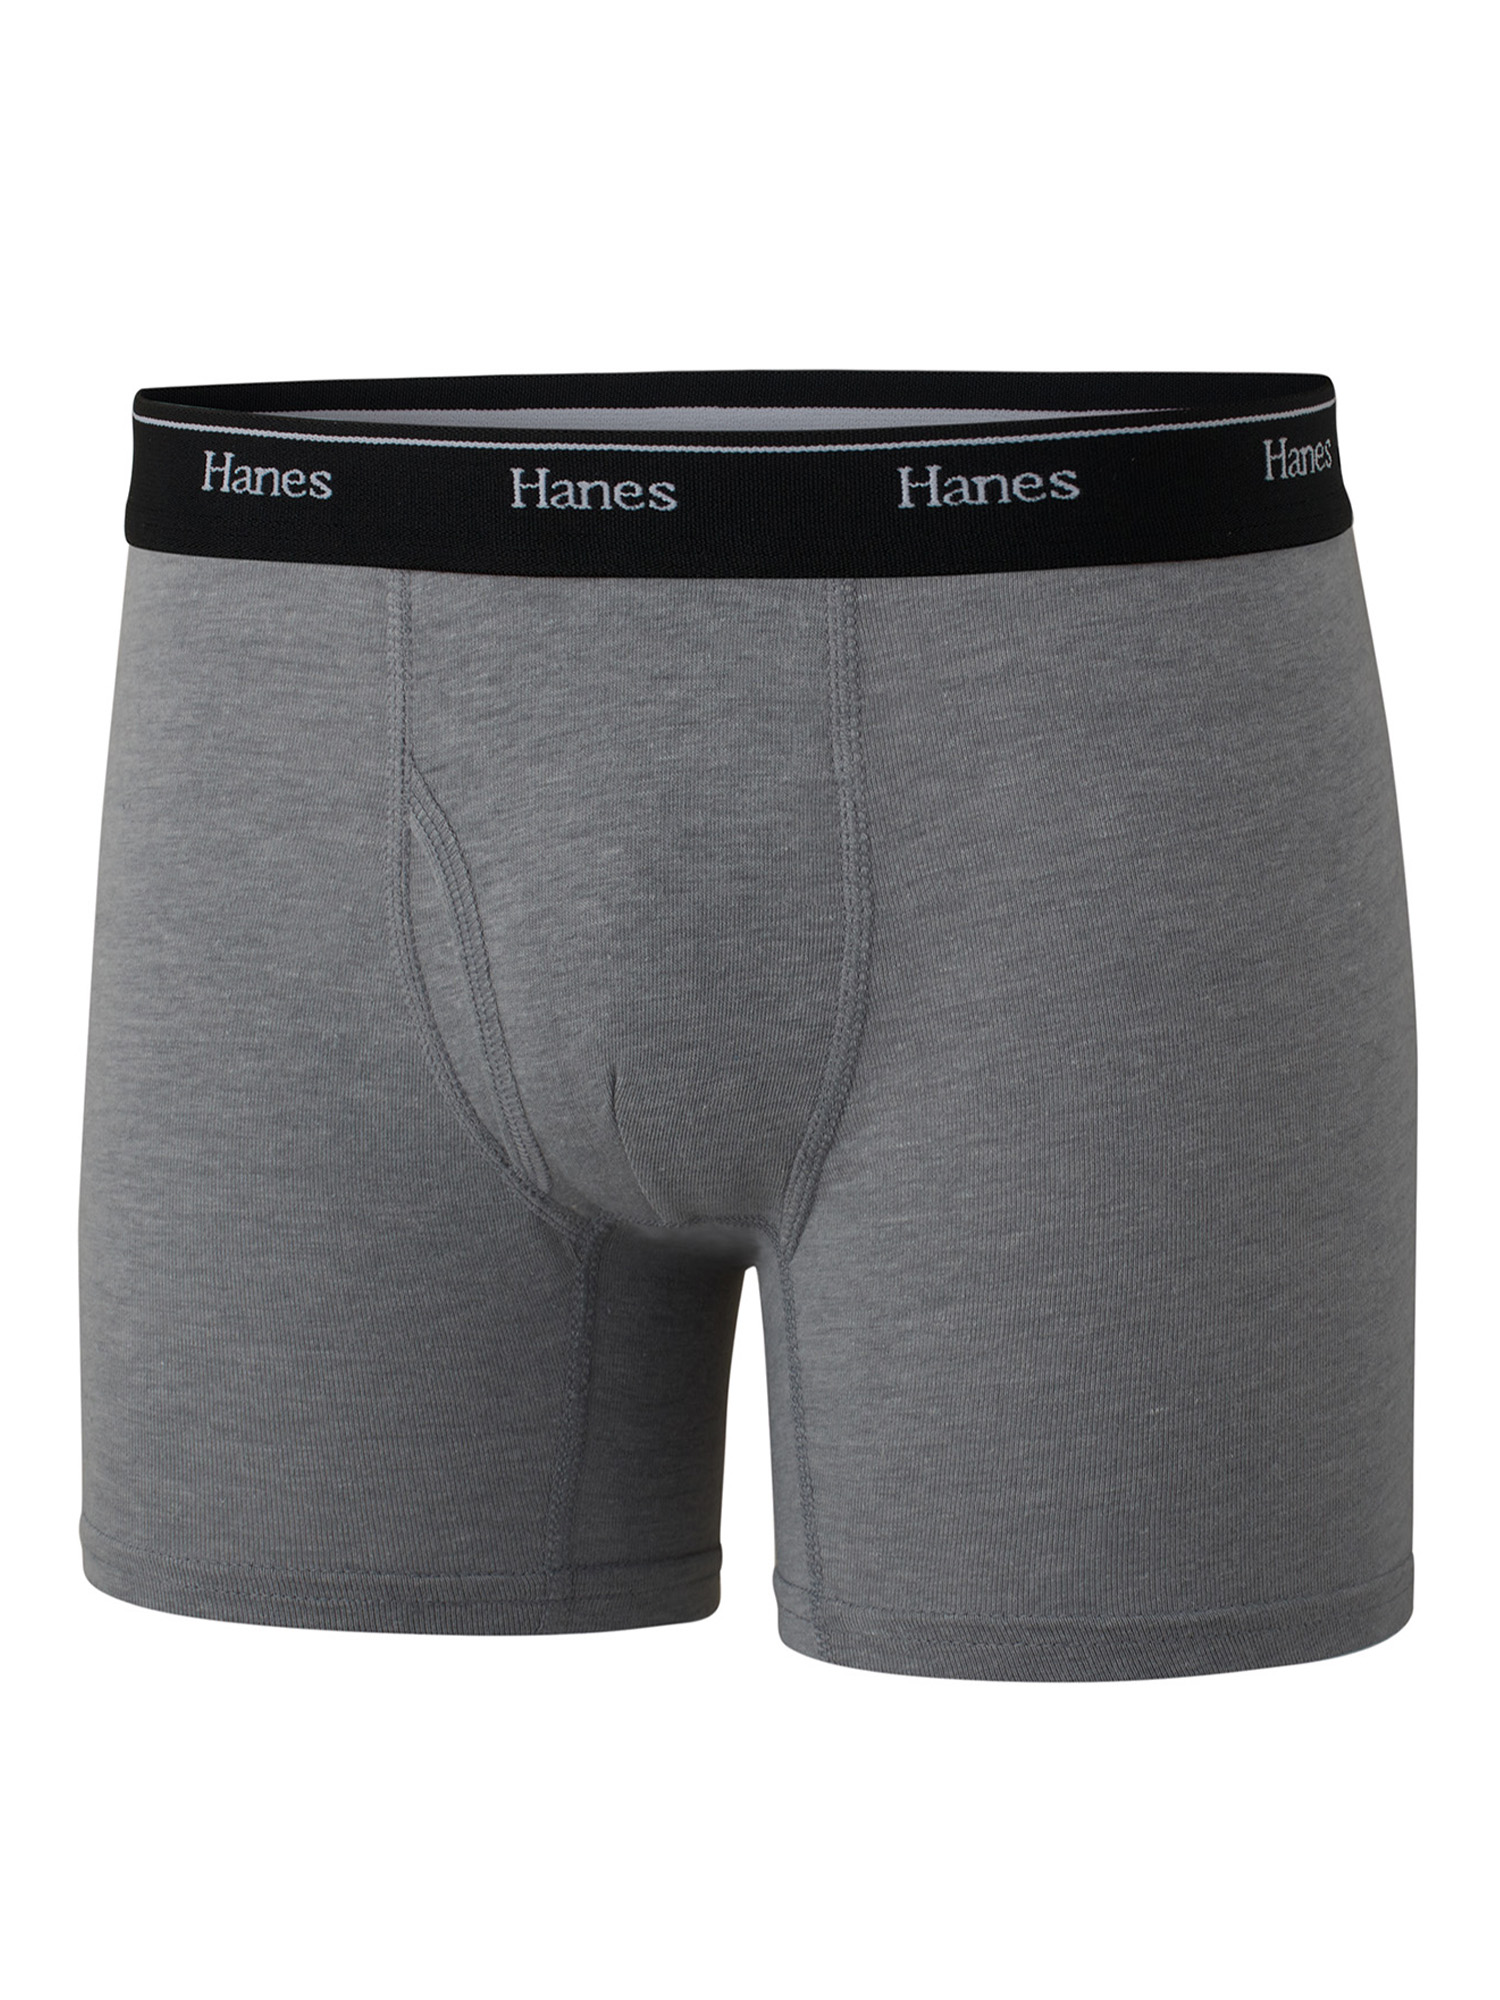 Hanes Originals Boys' Underwear Boxer Briefs, 5-Pack, Sizes S-XL - image 4 of 6